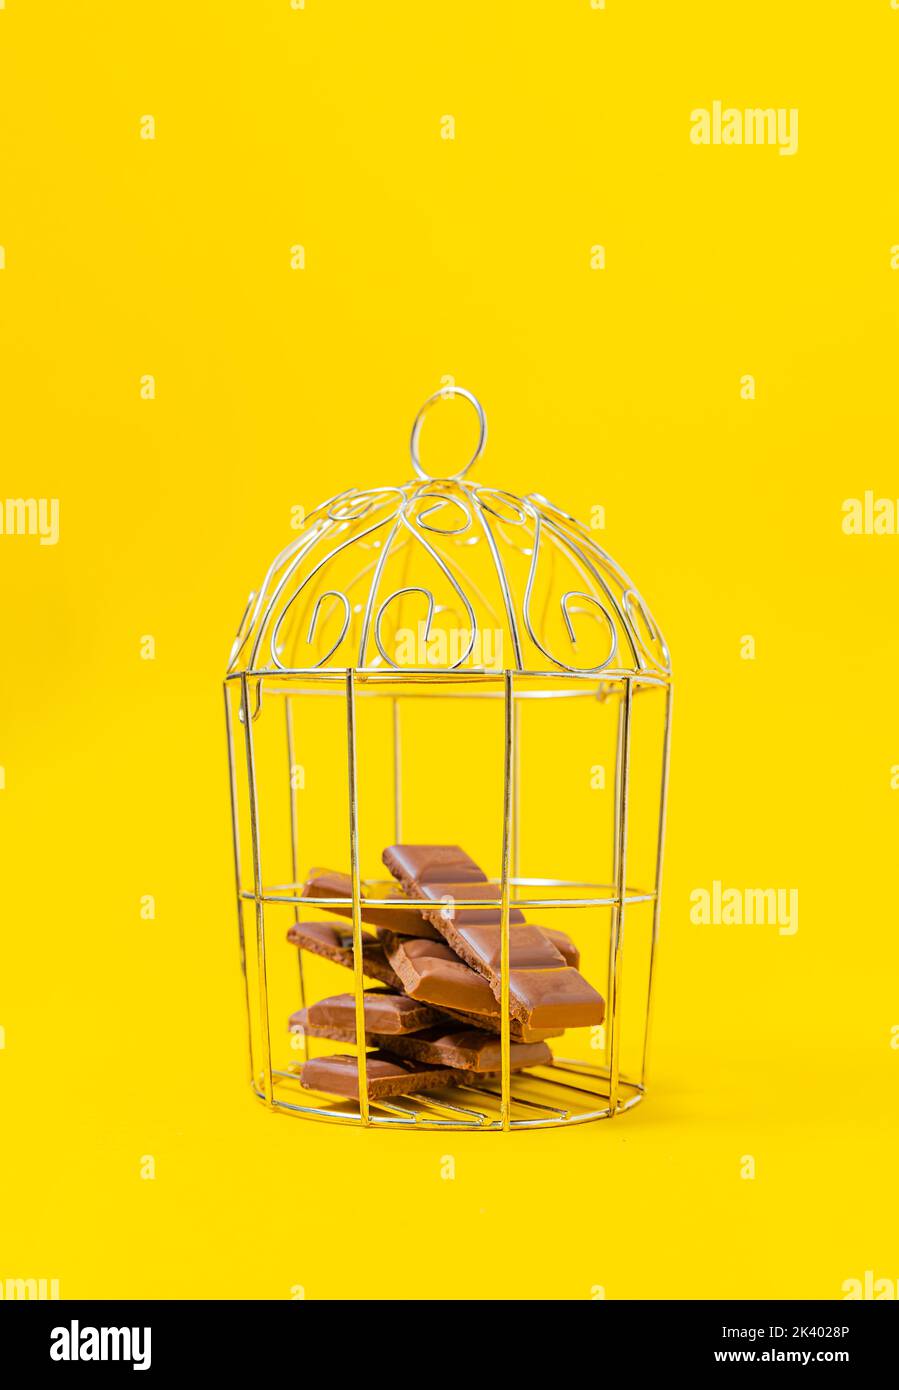 Trozos de chocolate encerrados en una jaula. Concepto de motivación Foto de stock